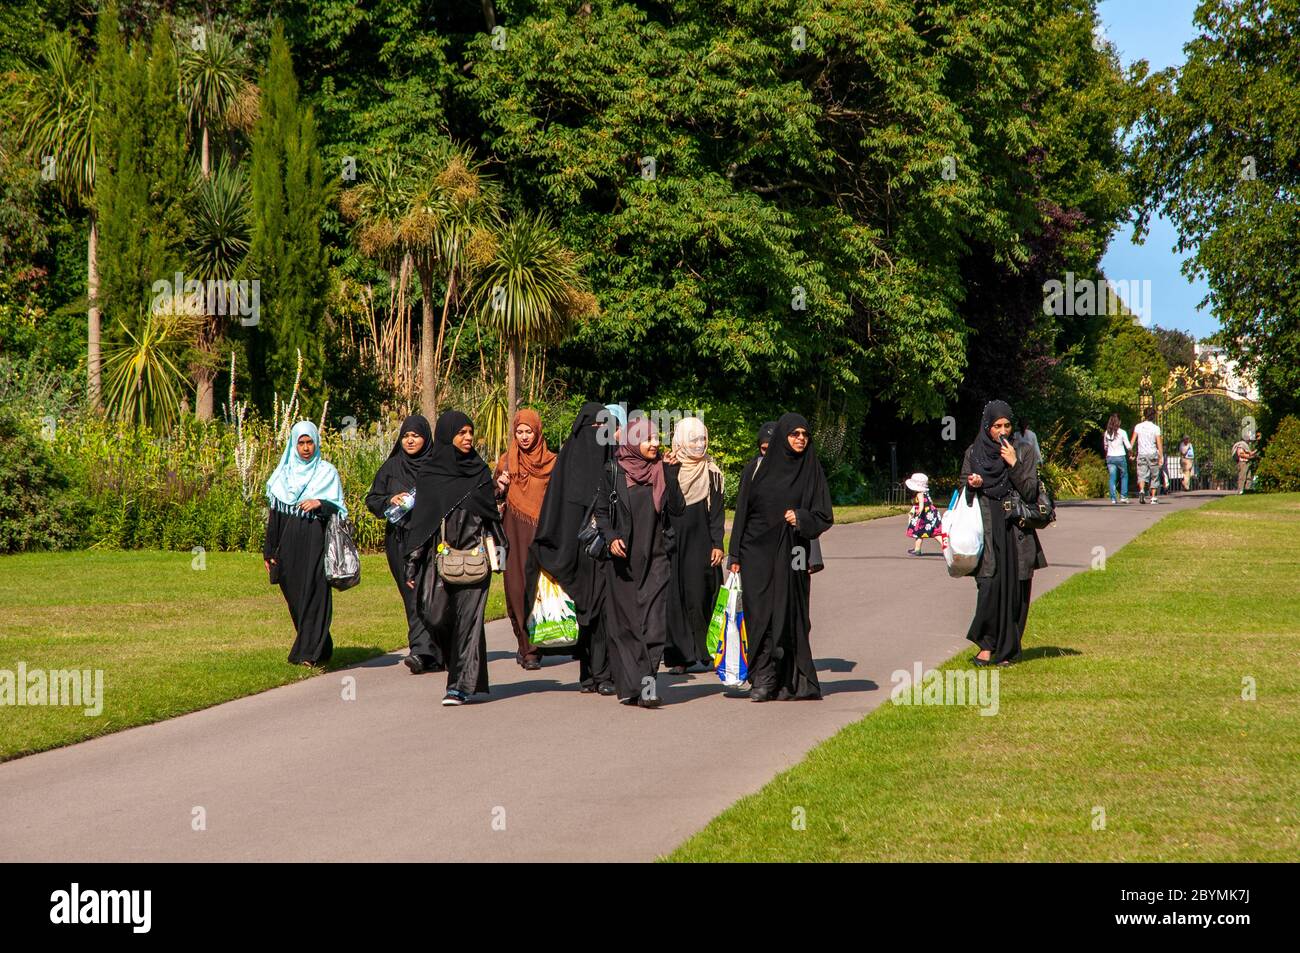 Grupo de mujeres musulmanas que visten secuestradores negros caminando en Regent's Park en Londres, Reino Unido Foto de stock